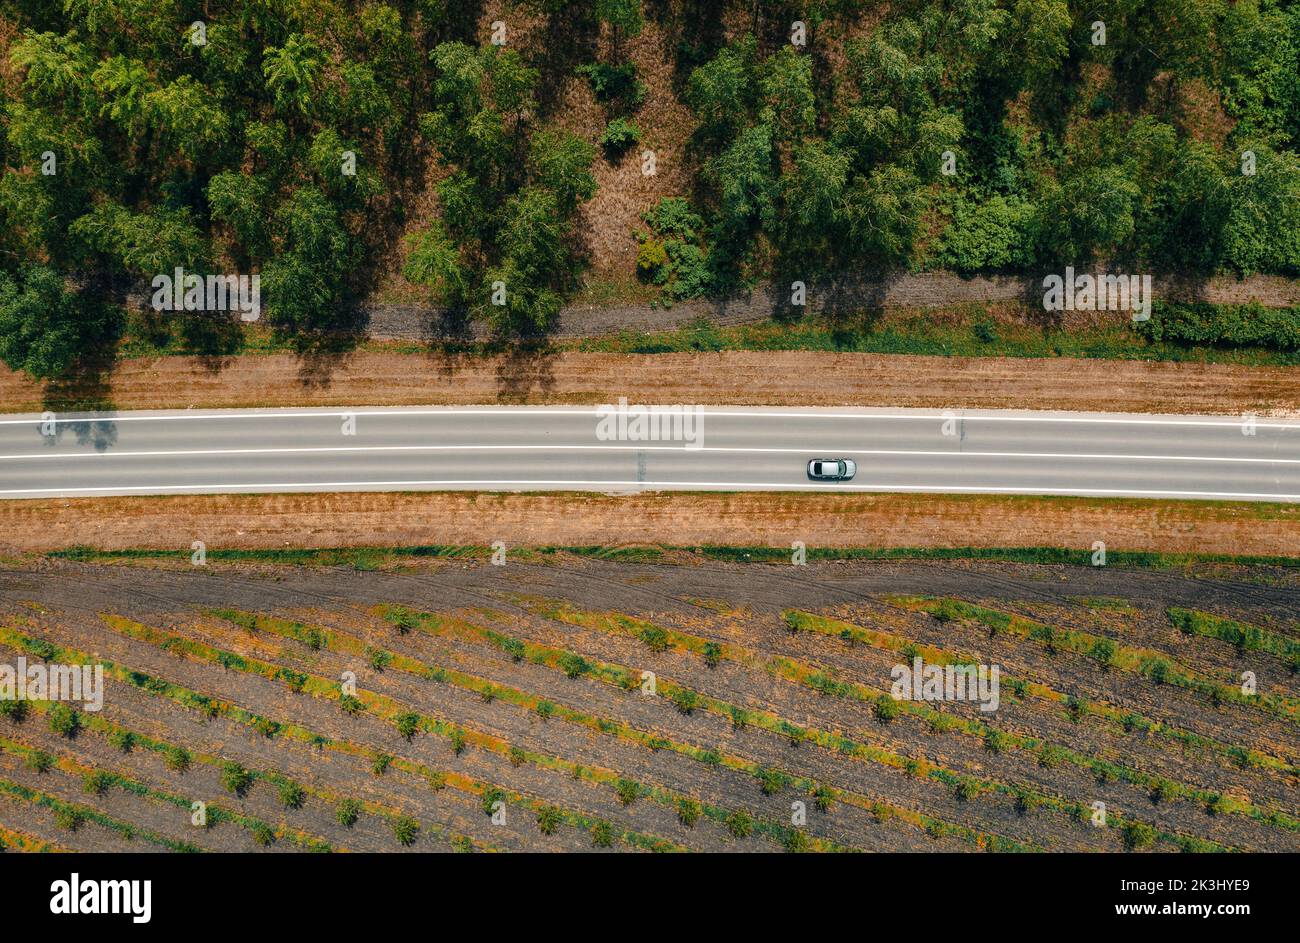 Vue aérienne d'une seule voiture grise conduisant le long de l'autoroute à travers le paysage boisé le jour ensoleillé d'été, concept de voyage Banque D'Images